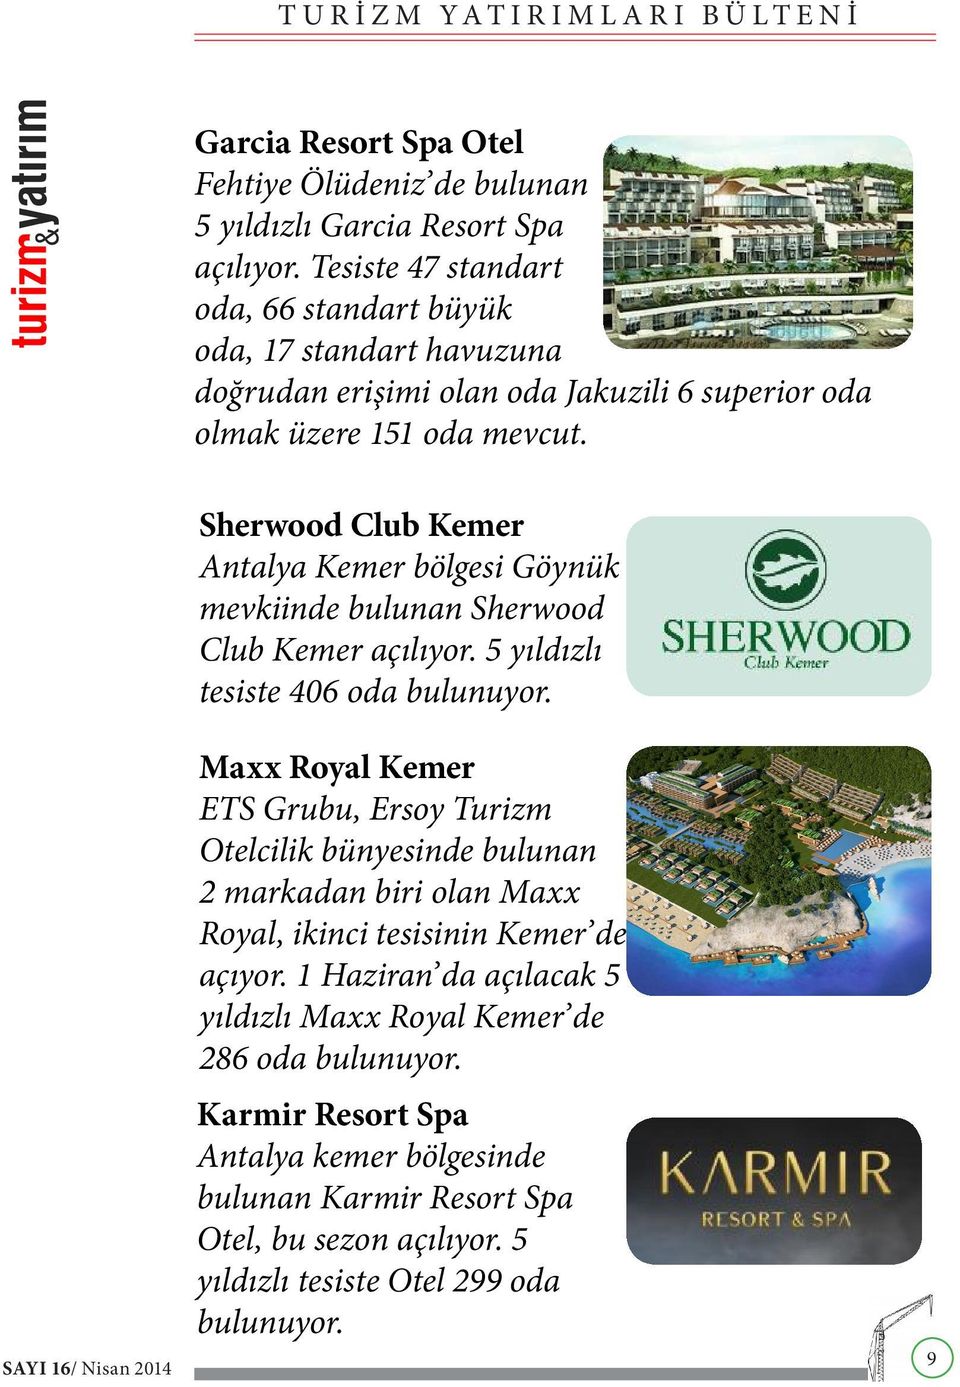 Sherwood Club Kemer Antalya Kemer bölgesi Göynük mevkiinde bulunan Sherwood Club Kemer açılıyor. 5 yıldızlı tesiste 406 oda bulunuyor.